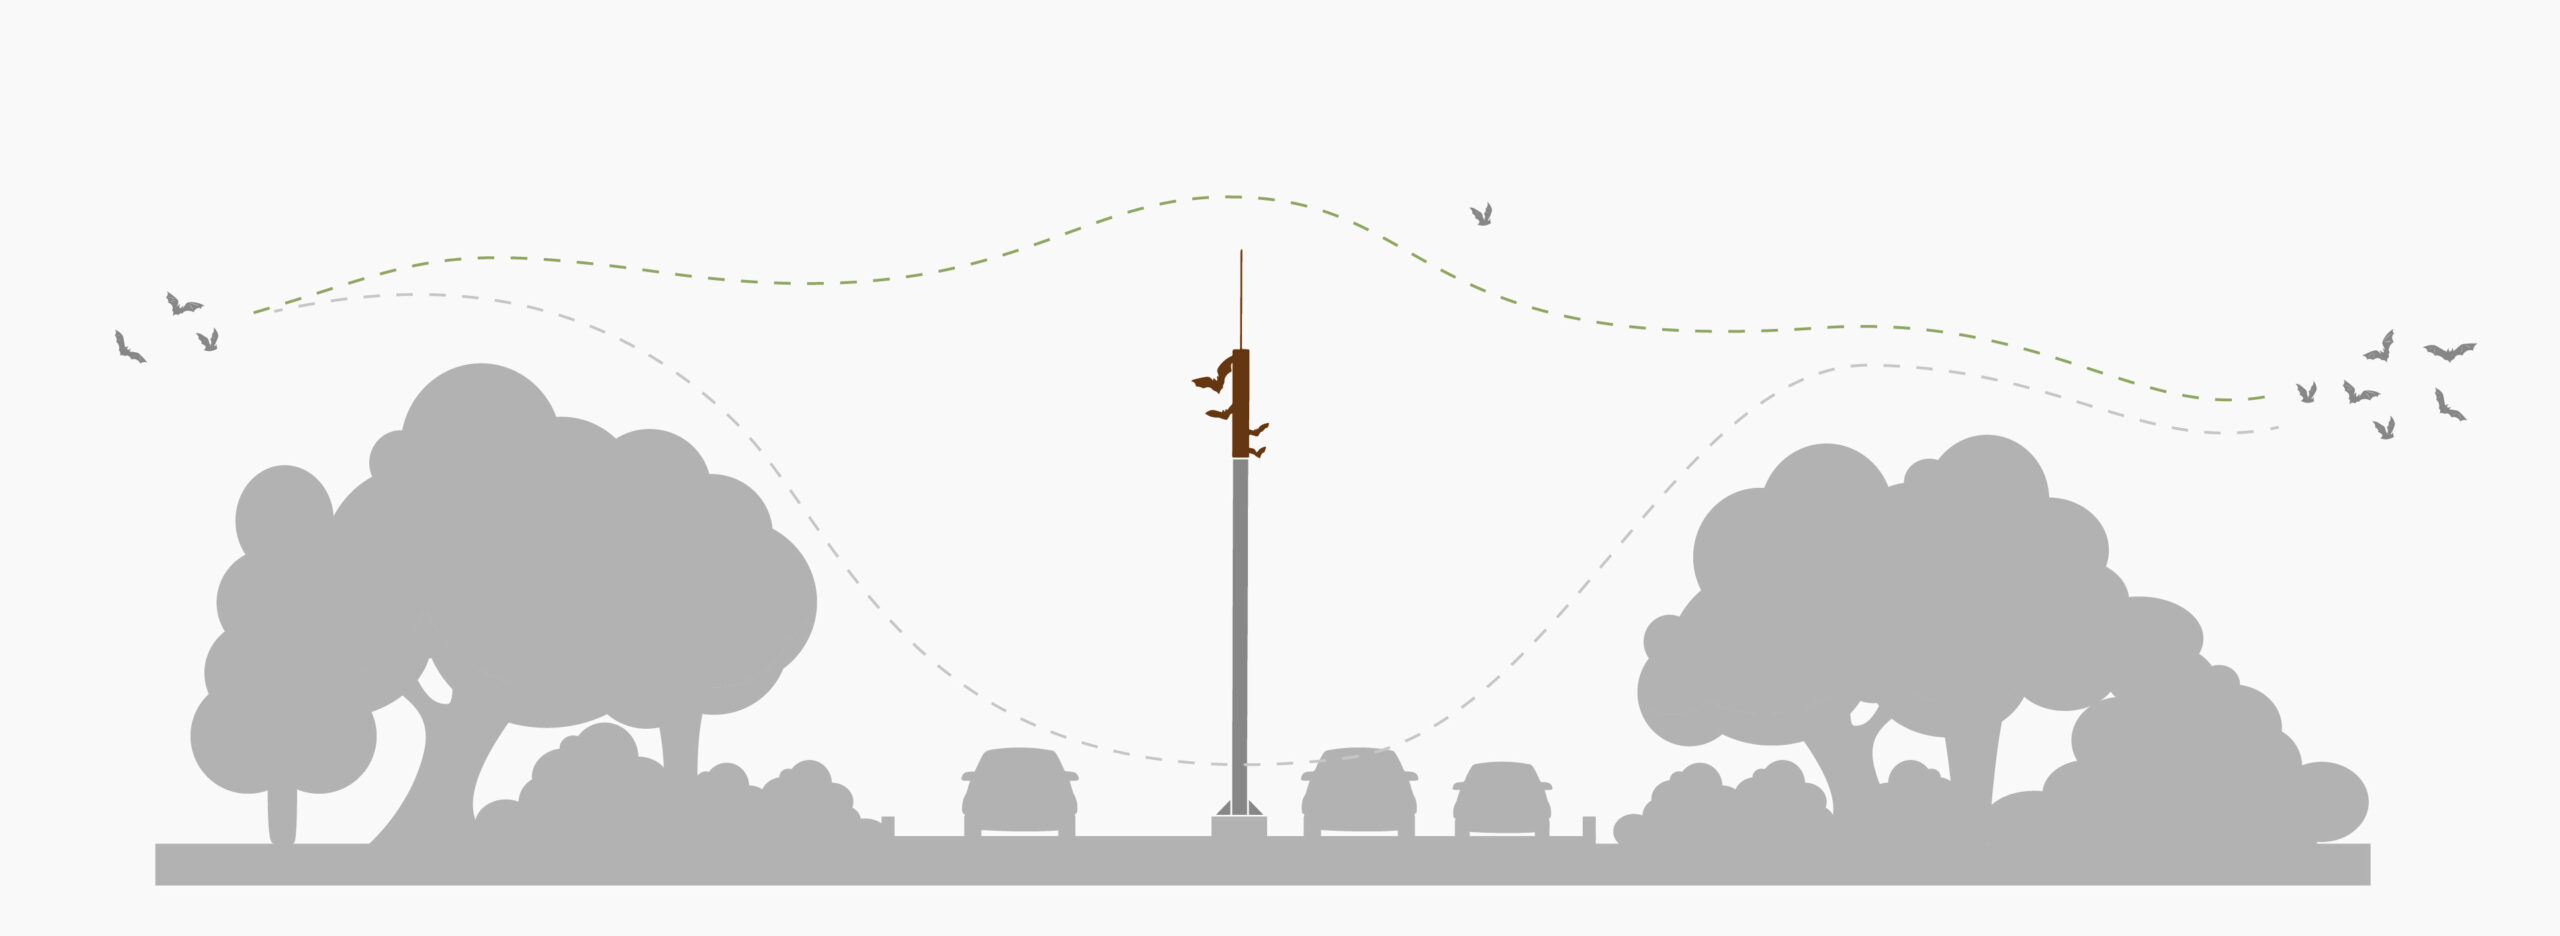 Vleermuispassage of vleermuizen hop over, ter bescherming van vleermuizen die op hun vleermuisroute niet vlak boven het wegdek vliegen. Illustratie van vleermuisroutes.